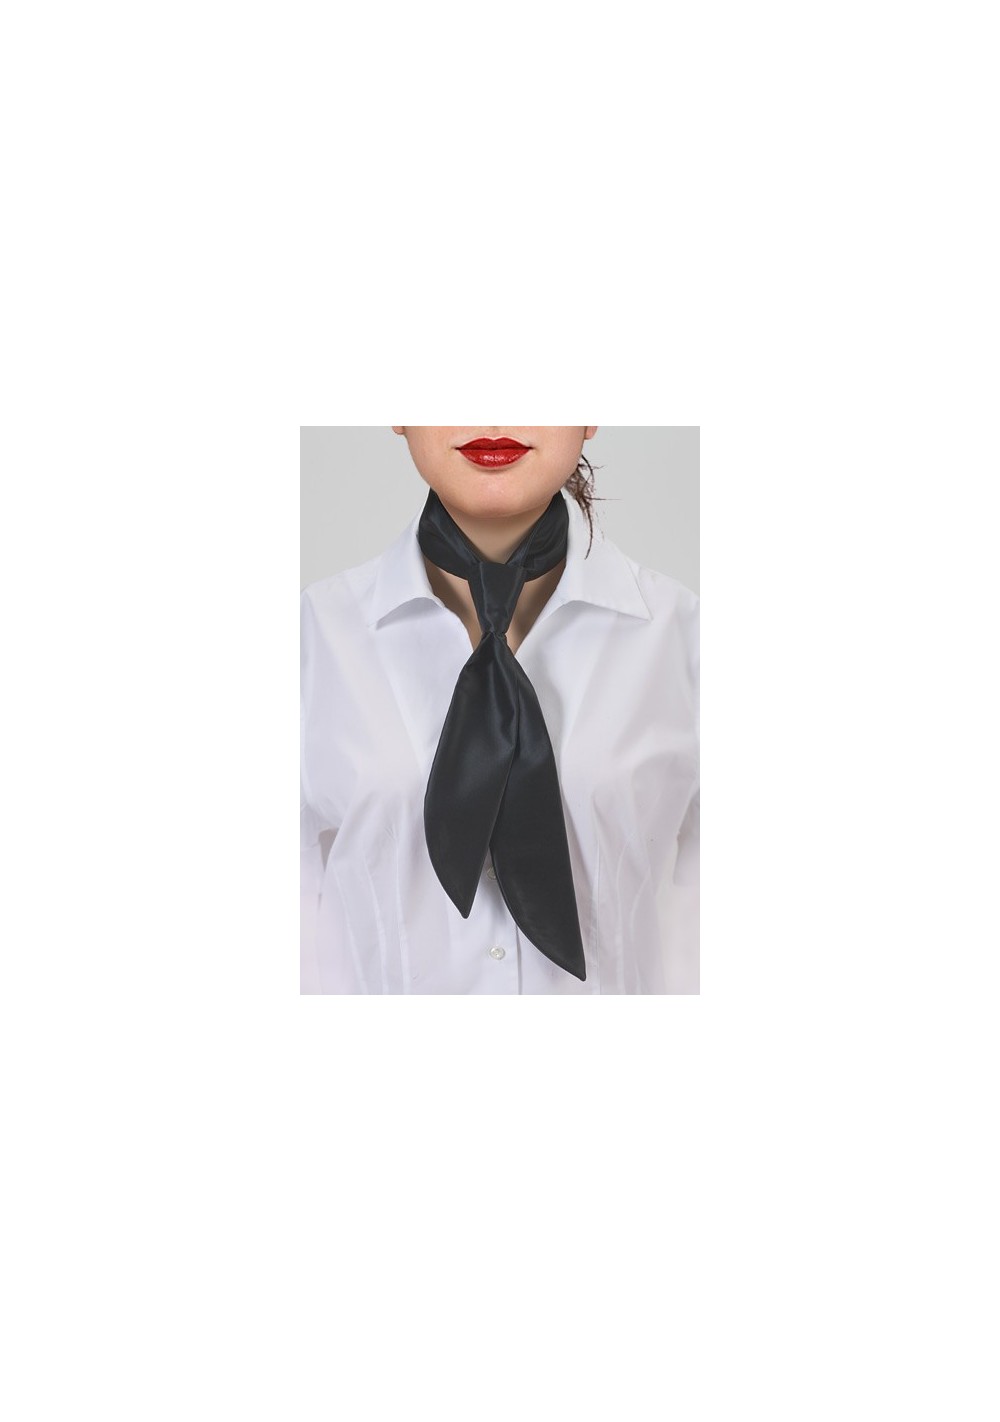 Women's Necktie in Dark Navy